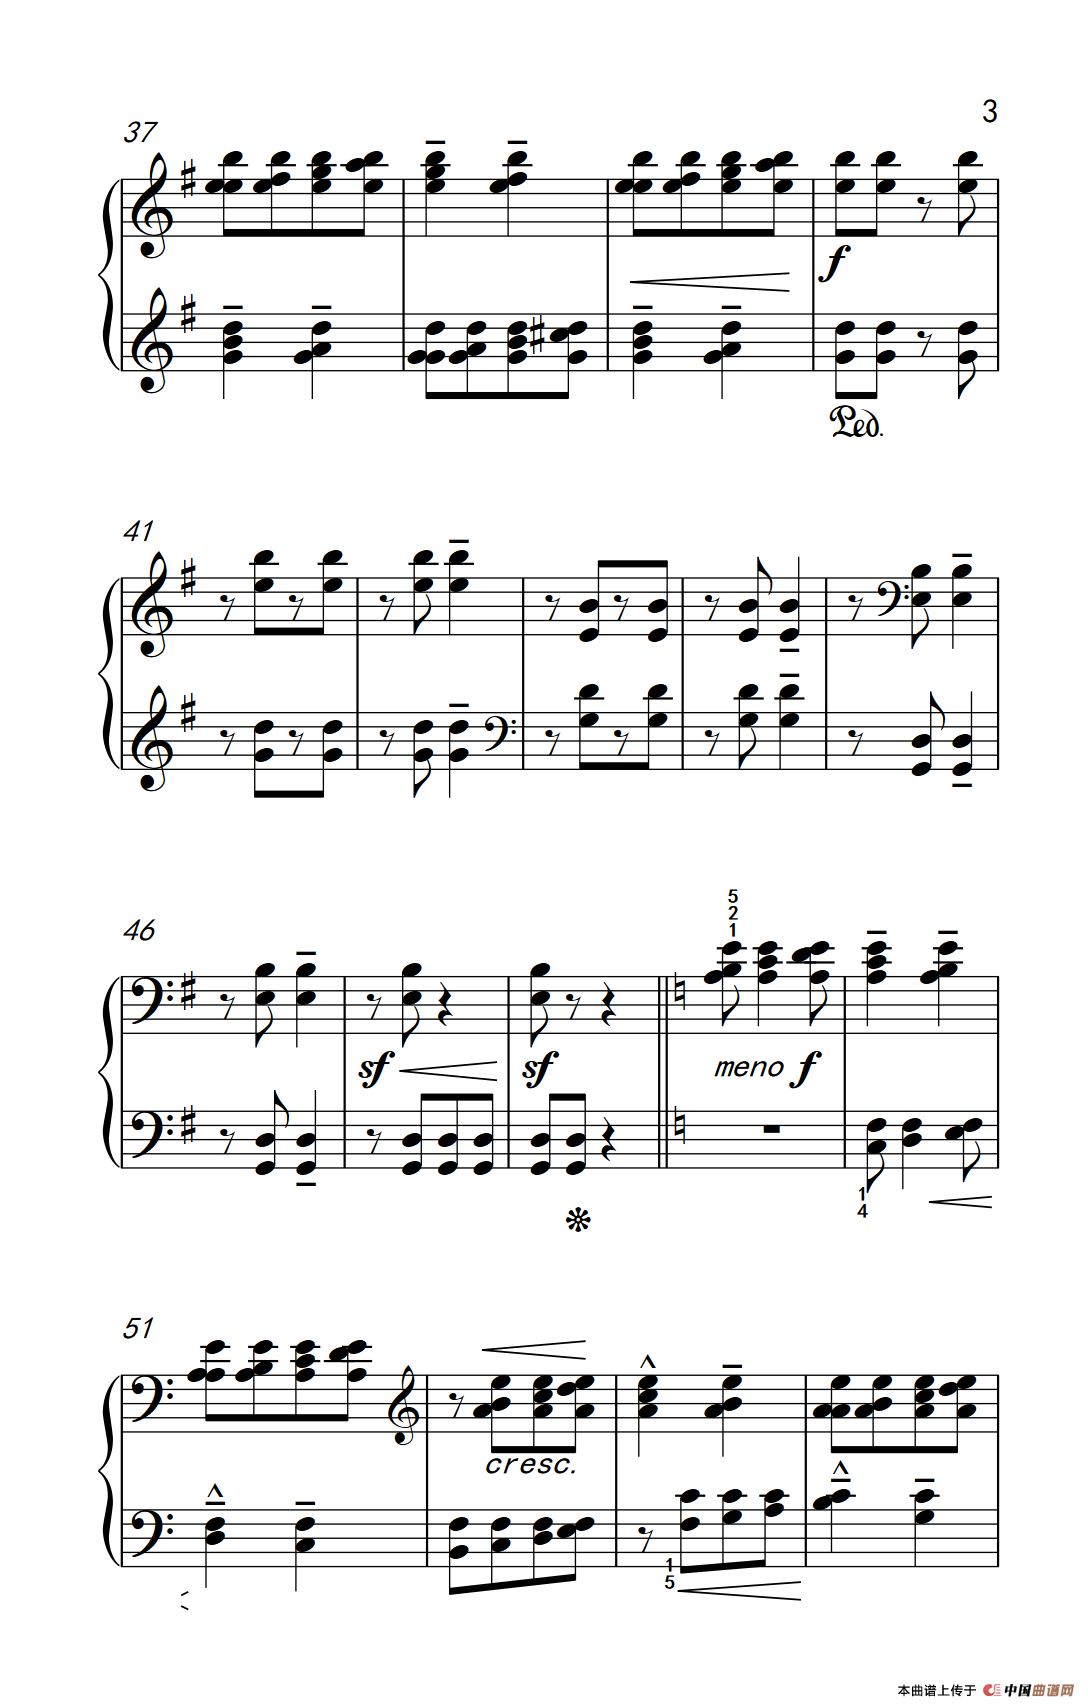 《和弦齐奏与旋律和音》钢琴曲谱图分享